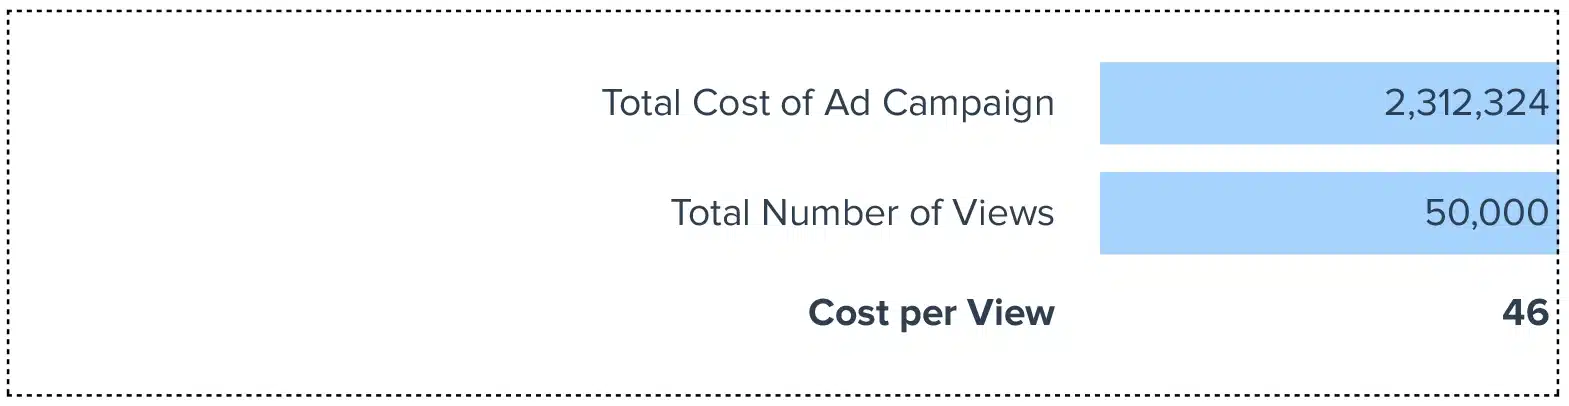 cost per view calculator